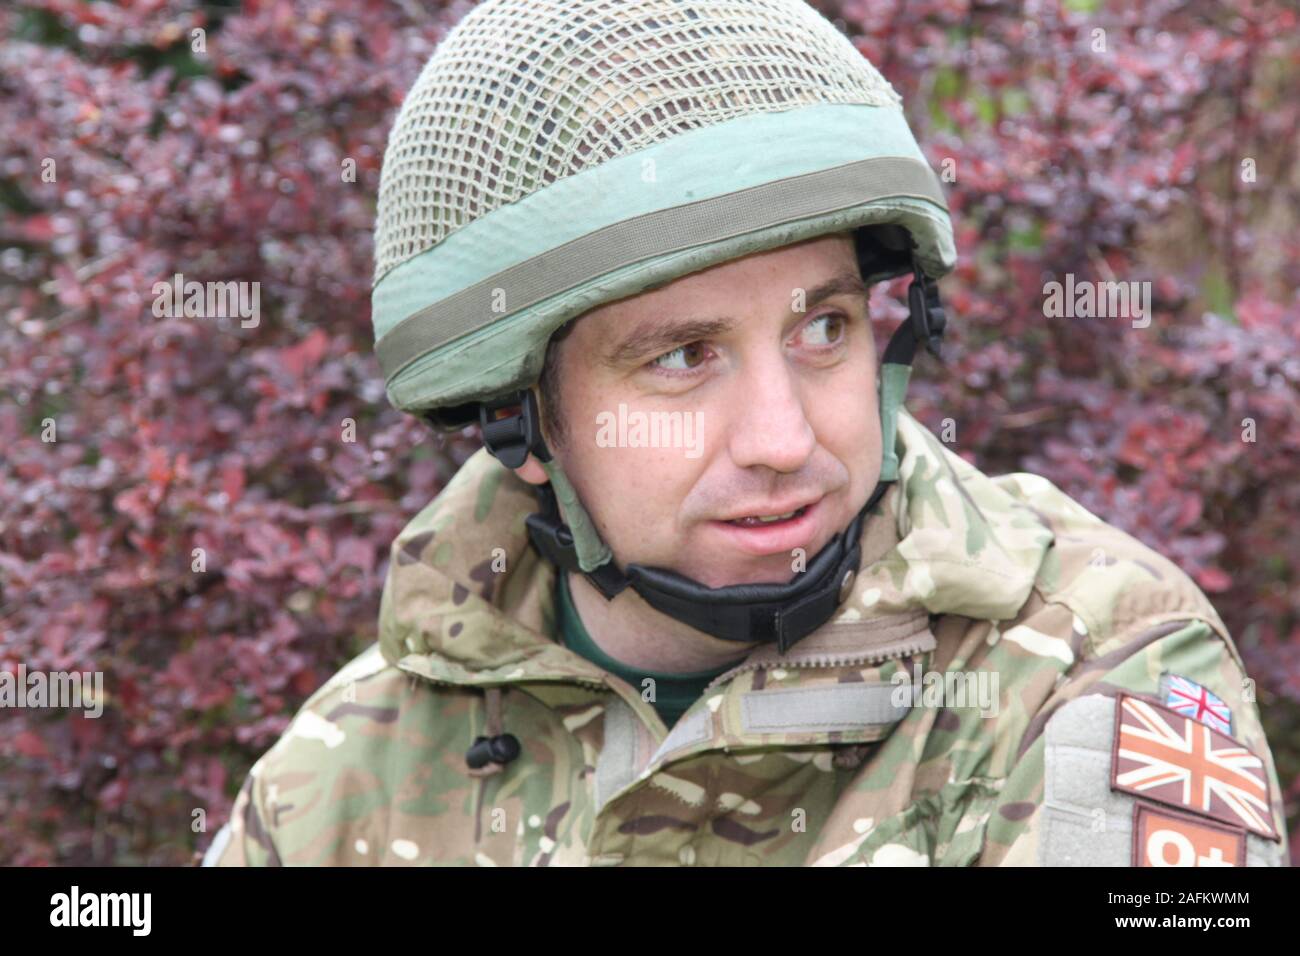 Soldat de l'armée britannique armée en tenue de camouflage verts, veste et  casque Photo Stock - Alamy